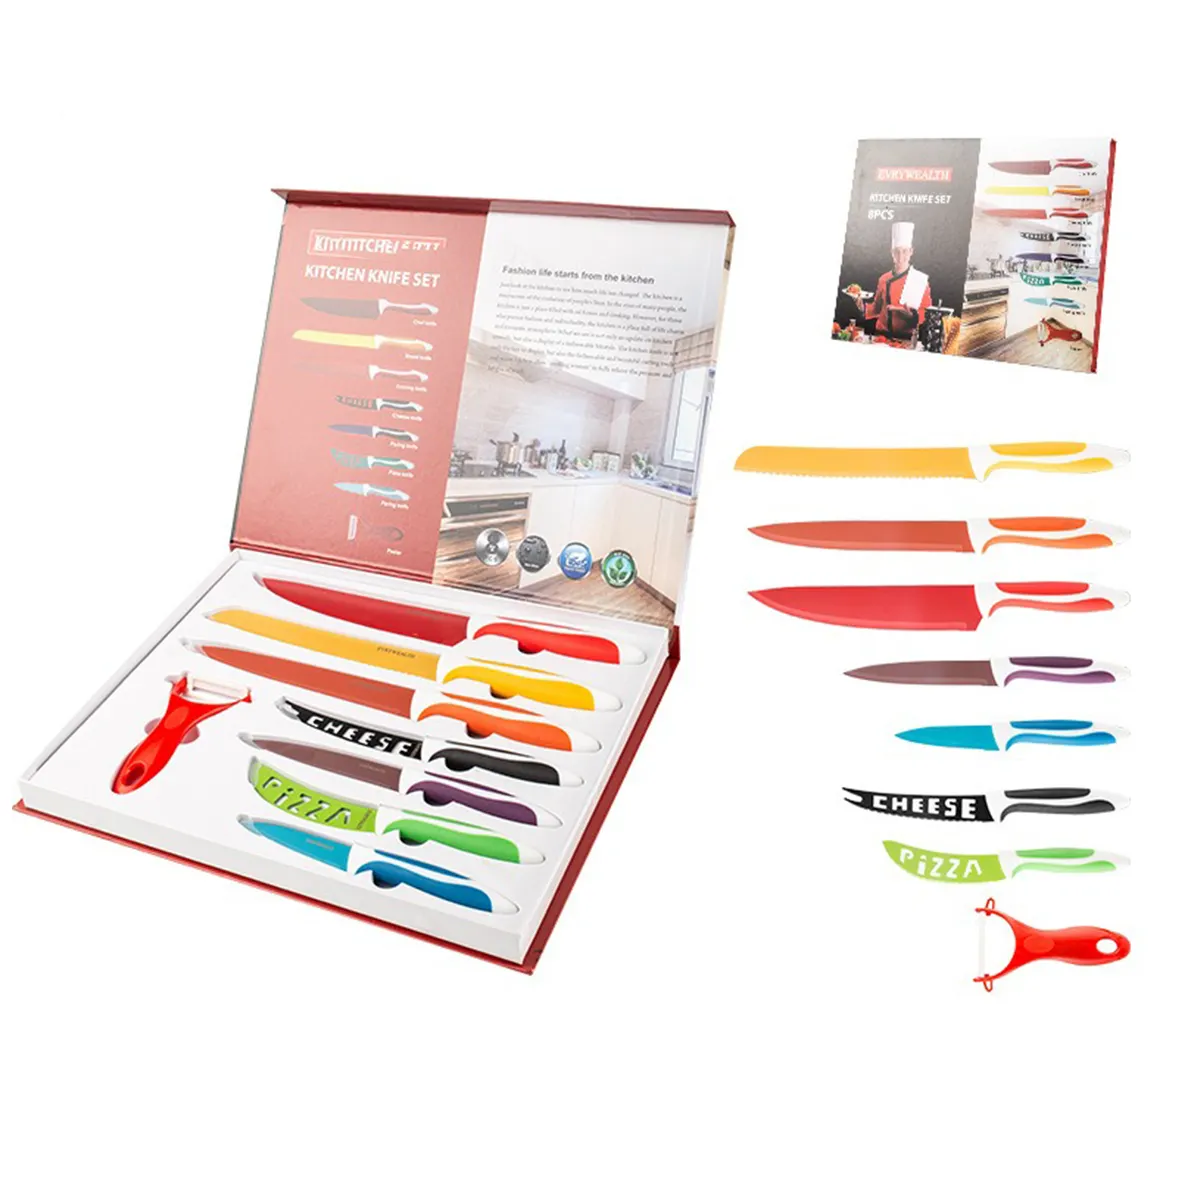 Mutfak kullanımı için hediye kutusu ile 8-Piece renkli bıçak seti